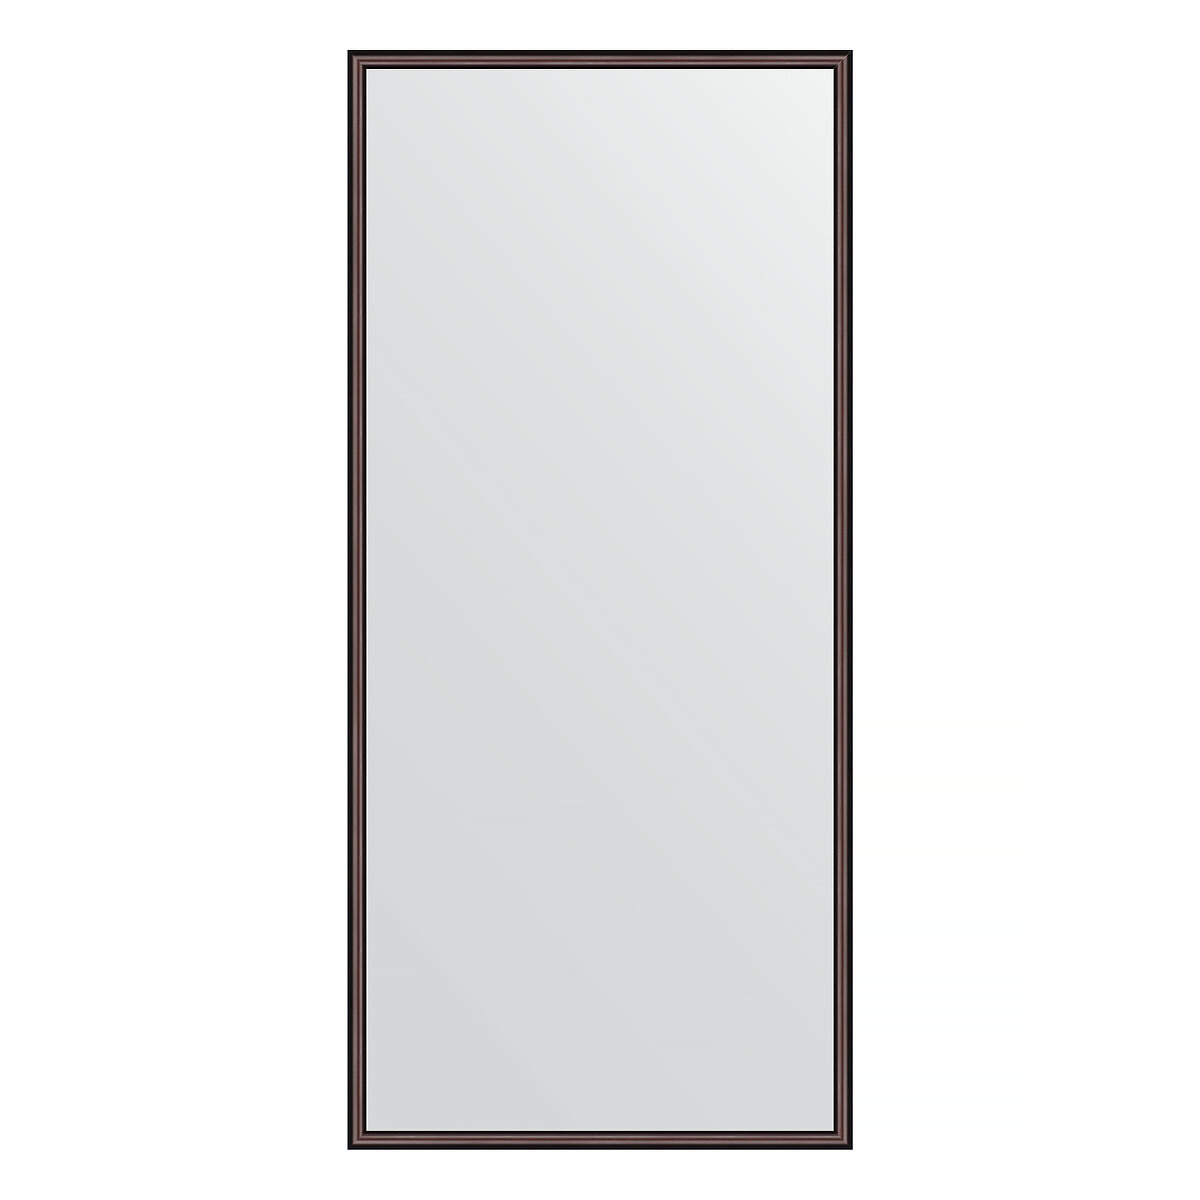 Зеркало настенное EVOFORM в багетной раме махагон, 68х148 см, для гостиной, прихожей, кабинета, спальни и ванной комнаты, BY 0758